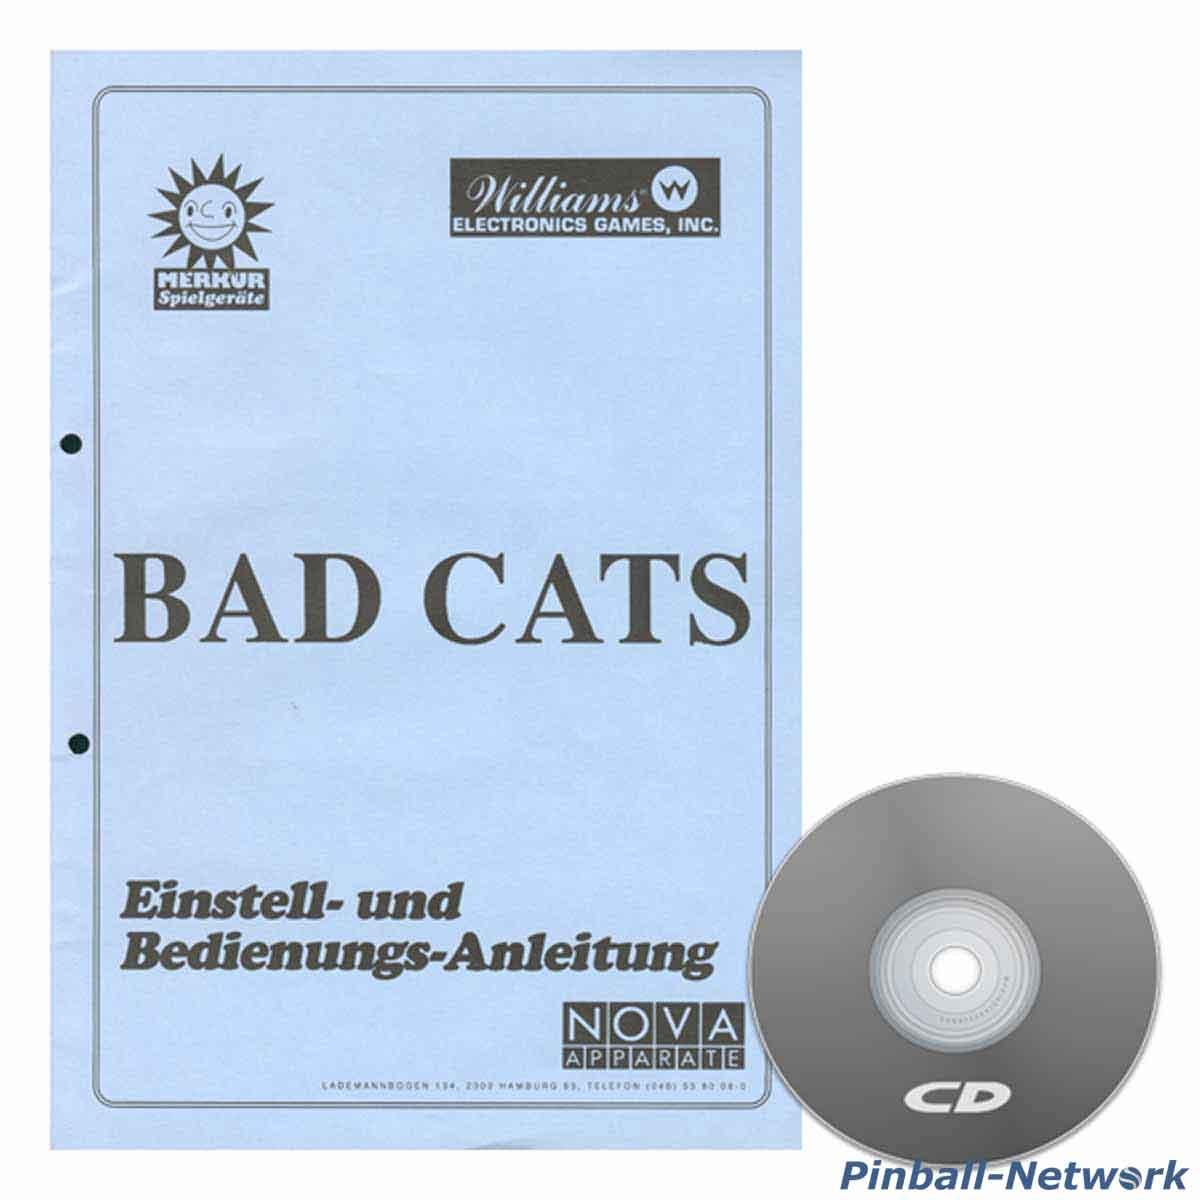 Bad Cats Einstell- und Bedienungs-Anleitung